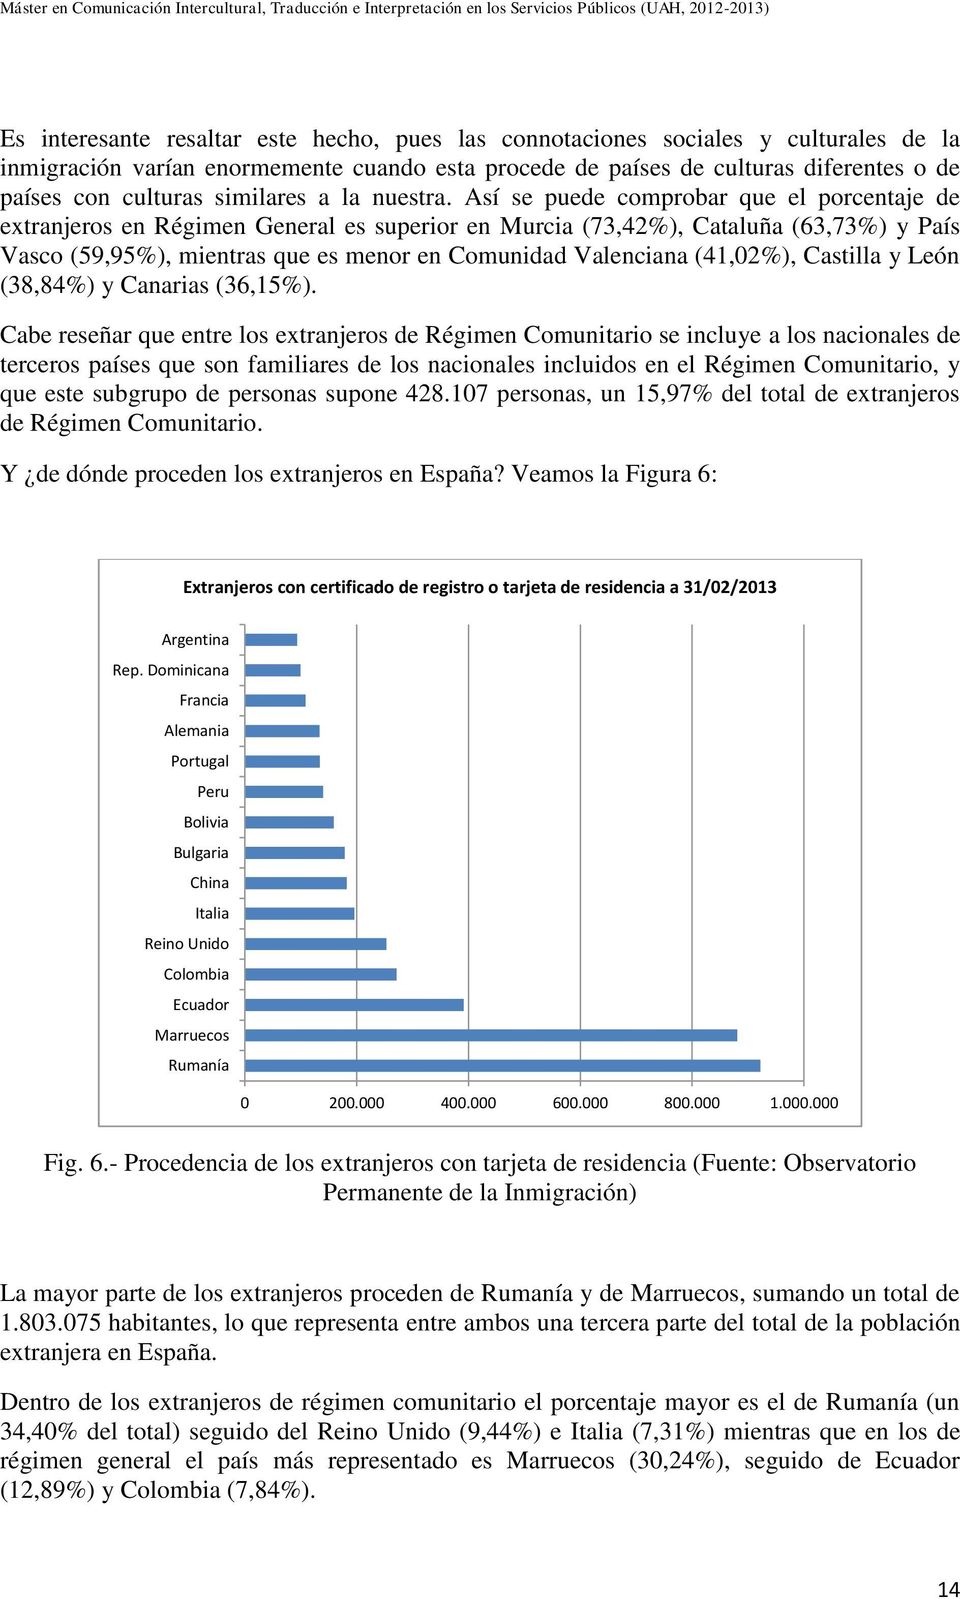 Así se puede comprobar que el porcentaje de extranjeros en Régimen General es superior en Murcia (73,42%), Cataluña (63,73%) y País Vasco (59,95%), mientras que es menor en Comunidad Valenciana